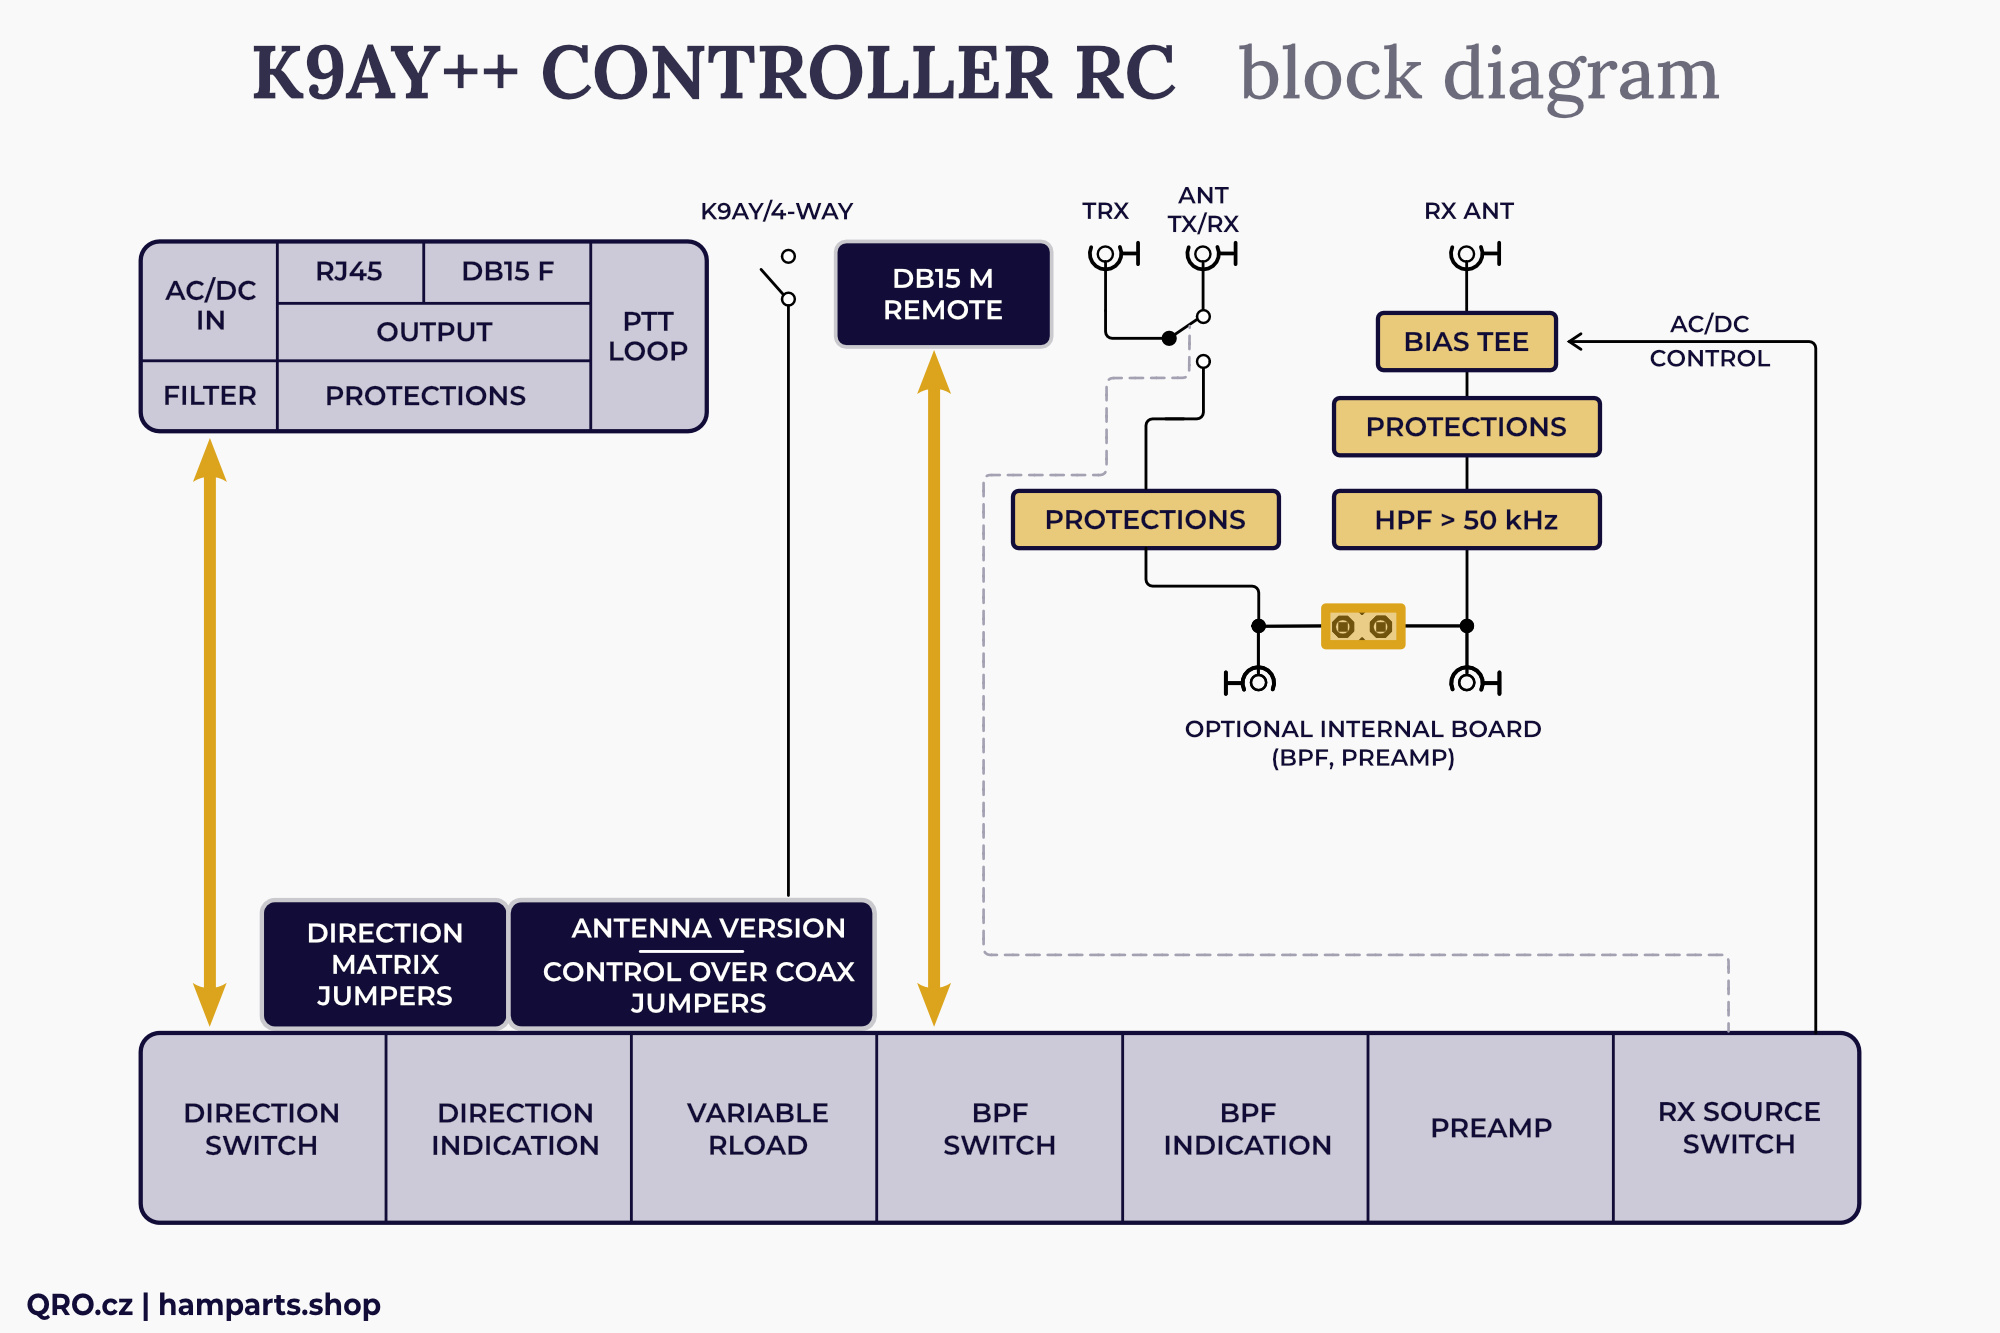 k9ay controller remote version block diagram by qro.cz hamparts.shop